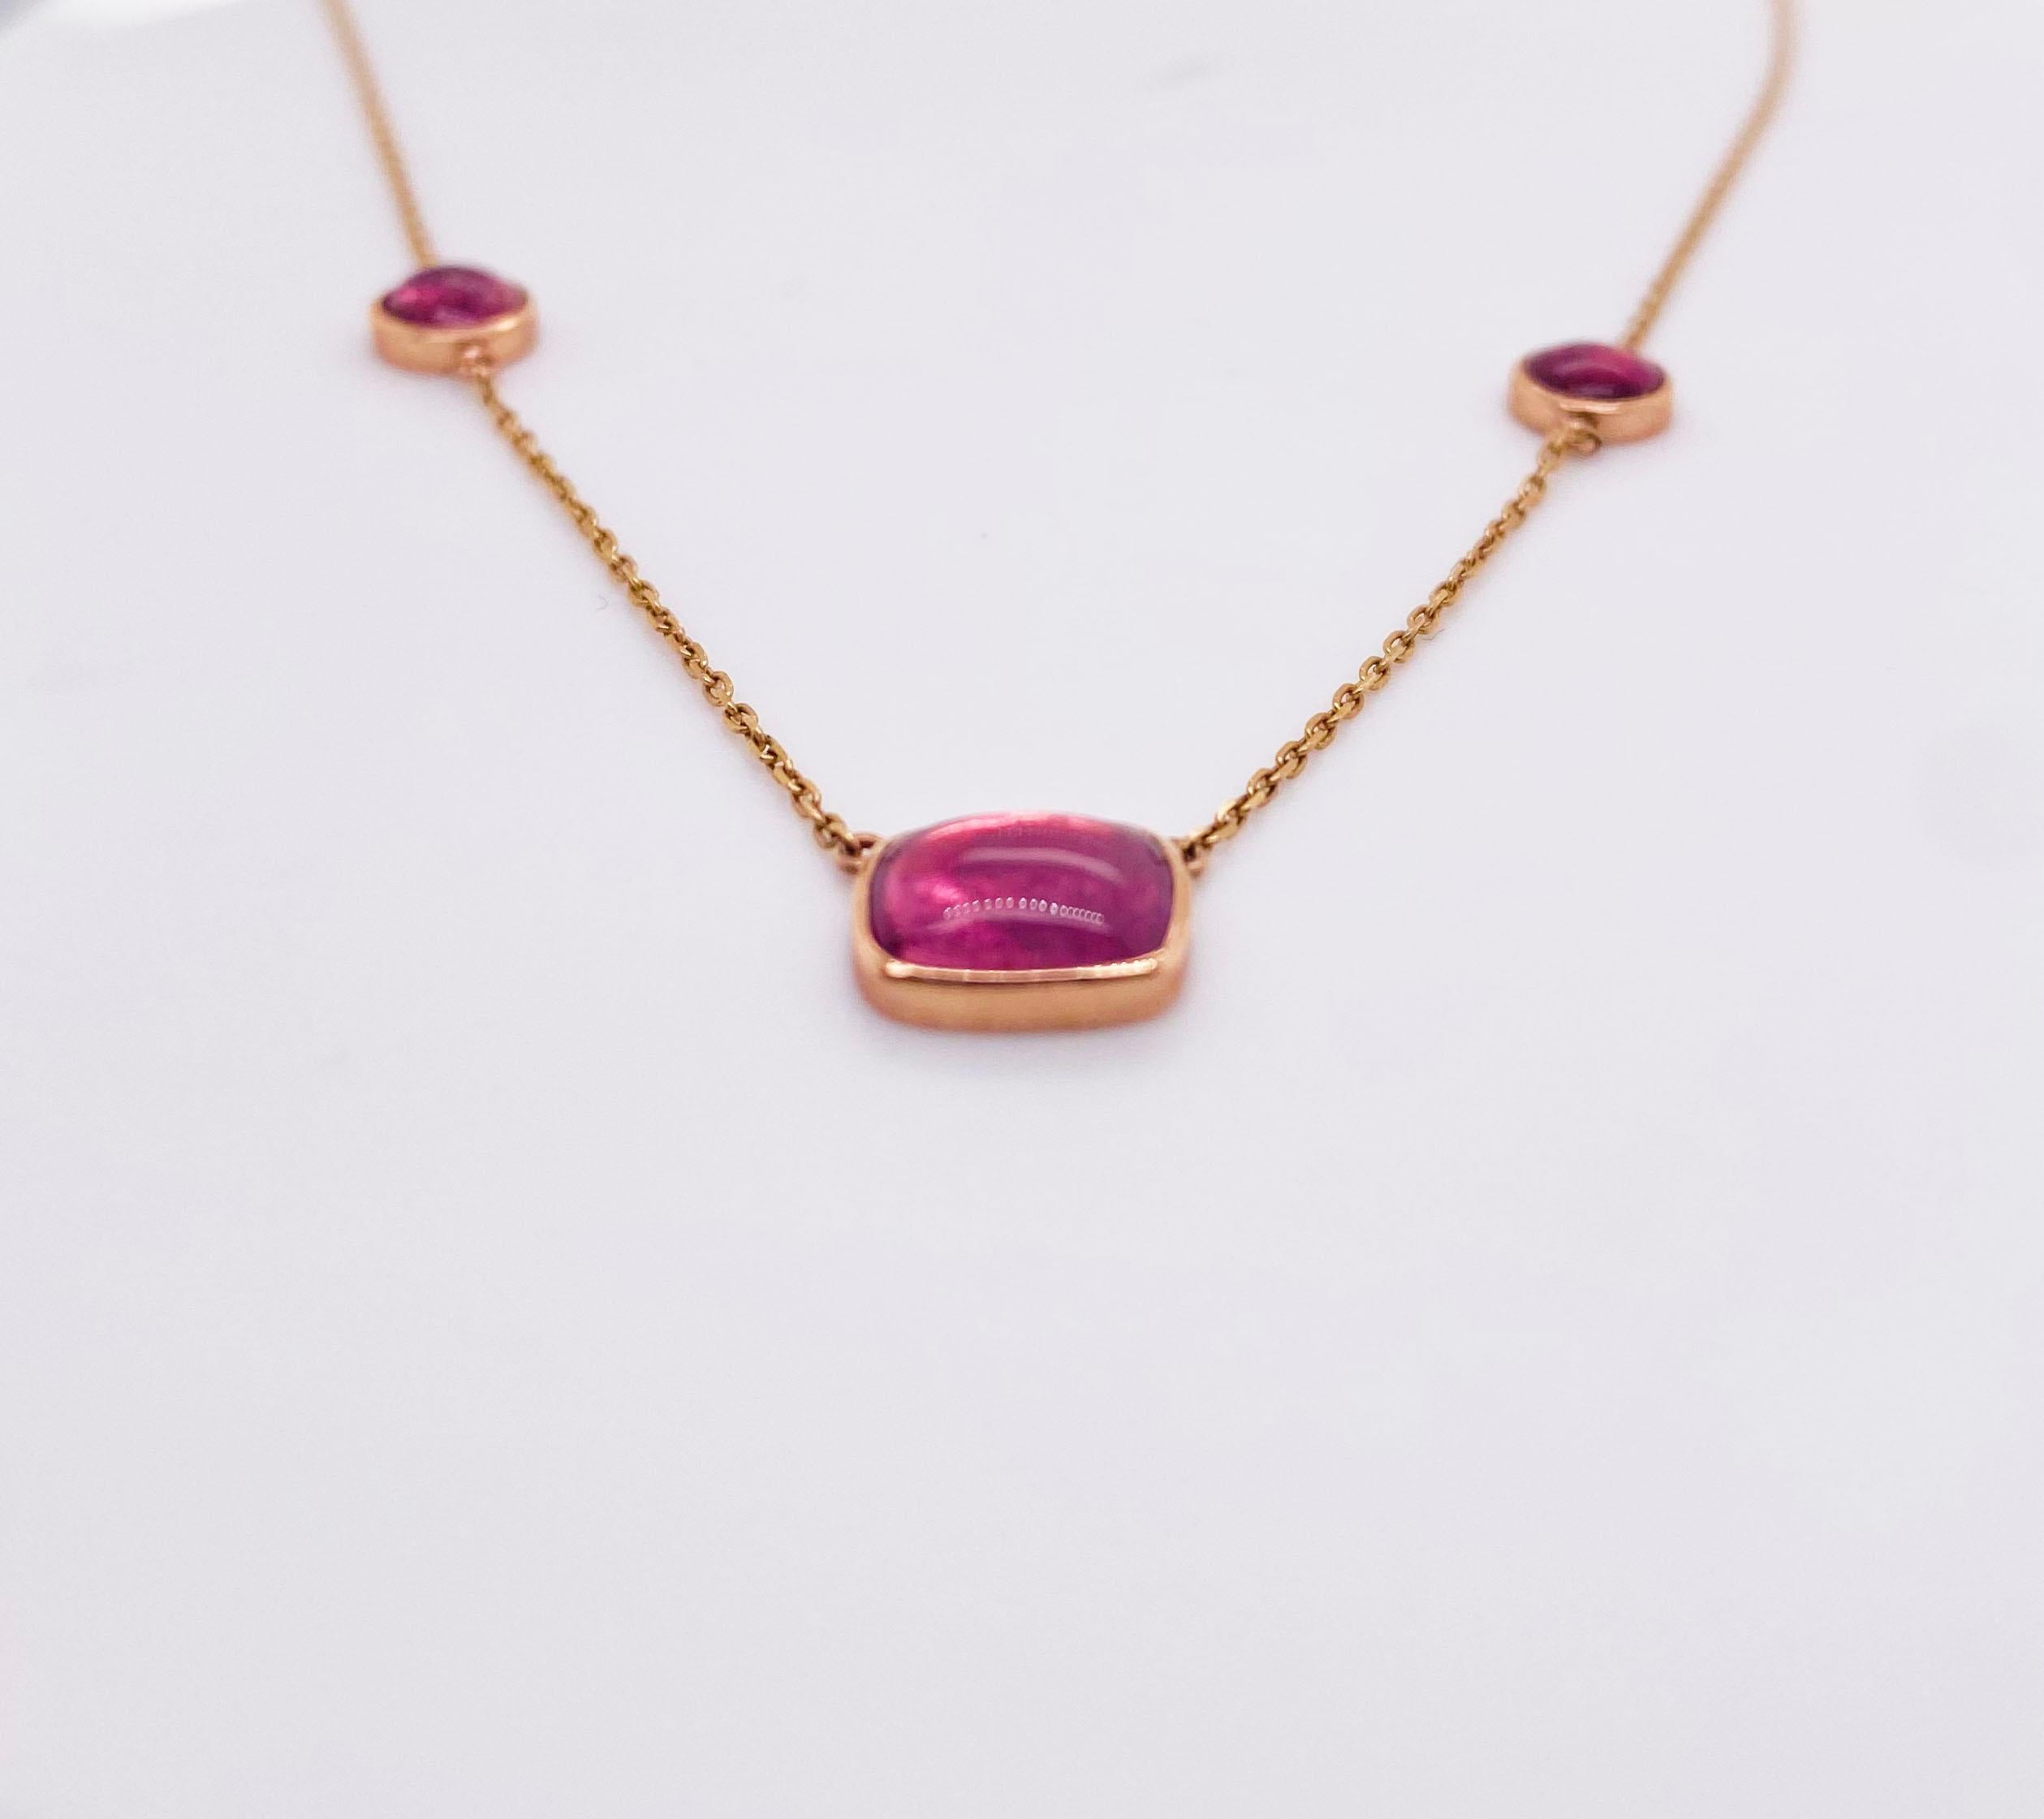 Diese Halskette wurde in unserem Geschäft sorgfältig von Hand gefertigt. Wir haben den 3 Cabochon rosa Turmalin aus einer Partie von 50 oder mehr ausgewählt. Wir haben sie ausgewählt, weil alle drei die gleiche Farbe haben und gut geschnitten sind.